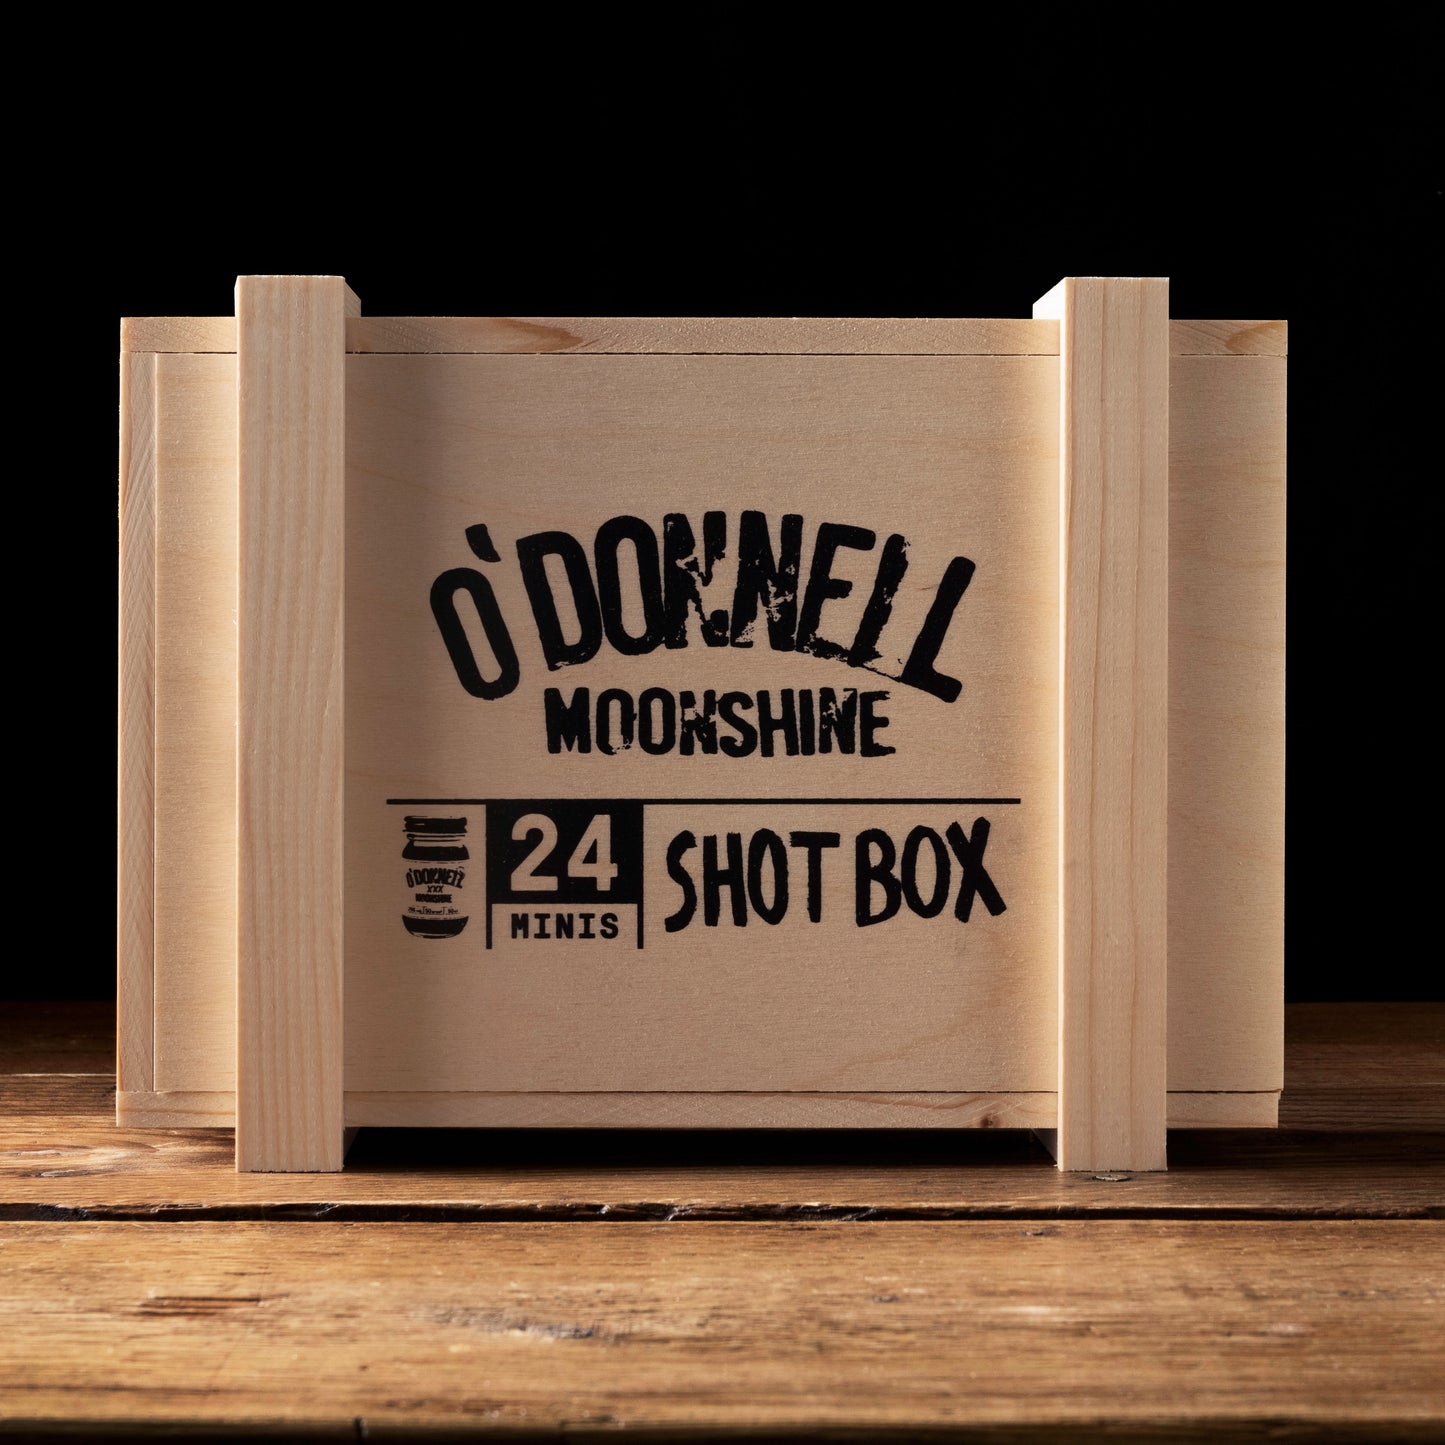 Große Shot Box O Donnell Moonshine